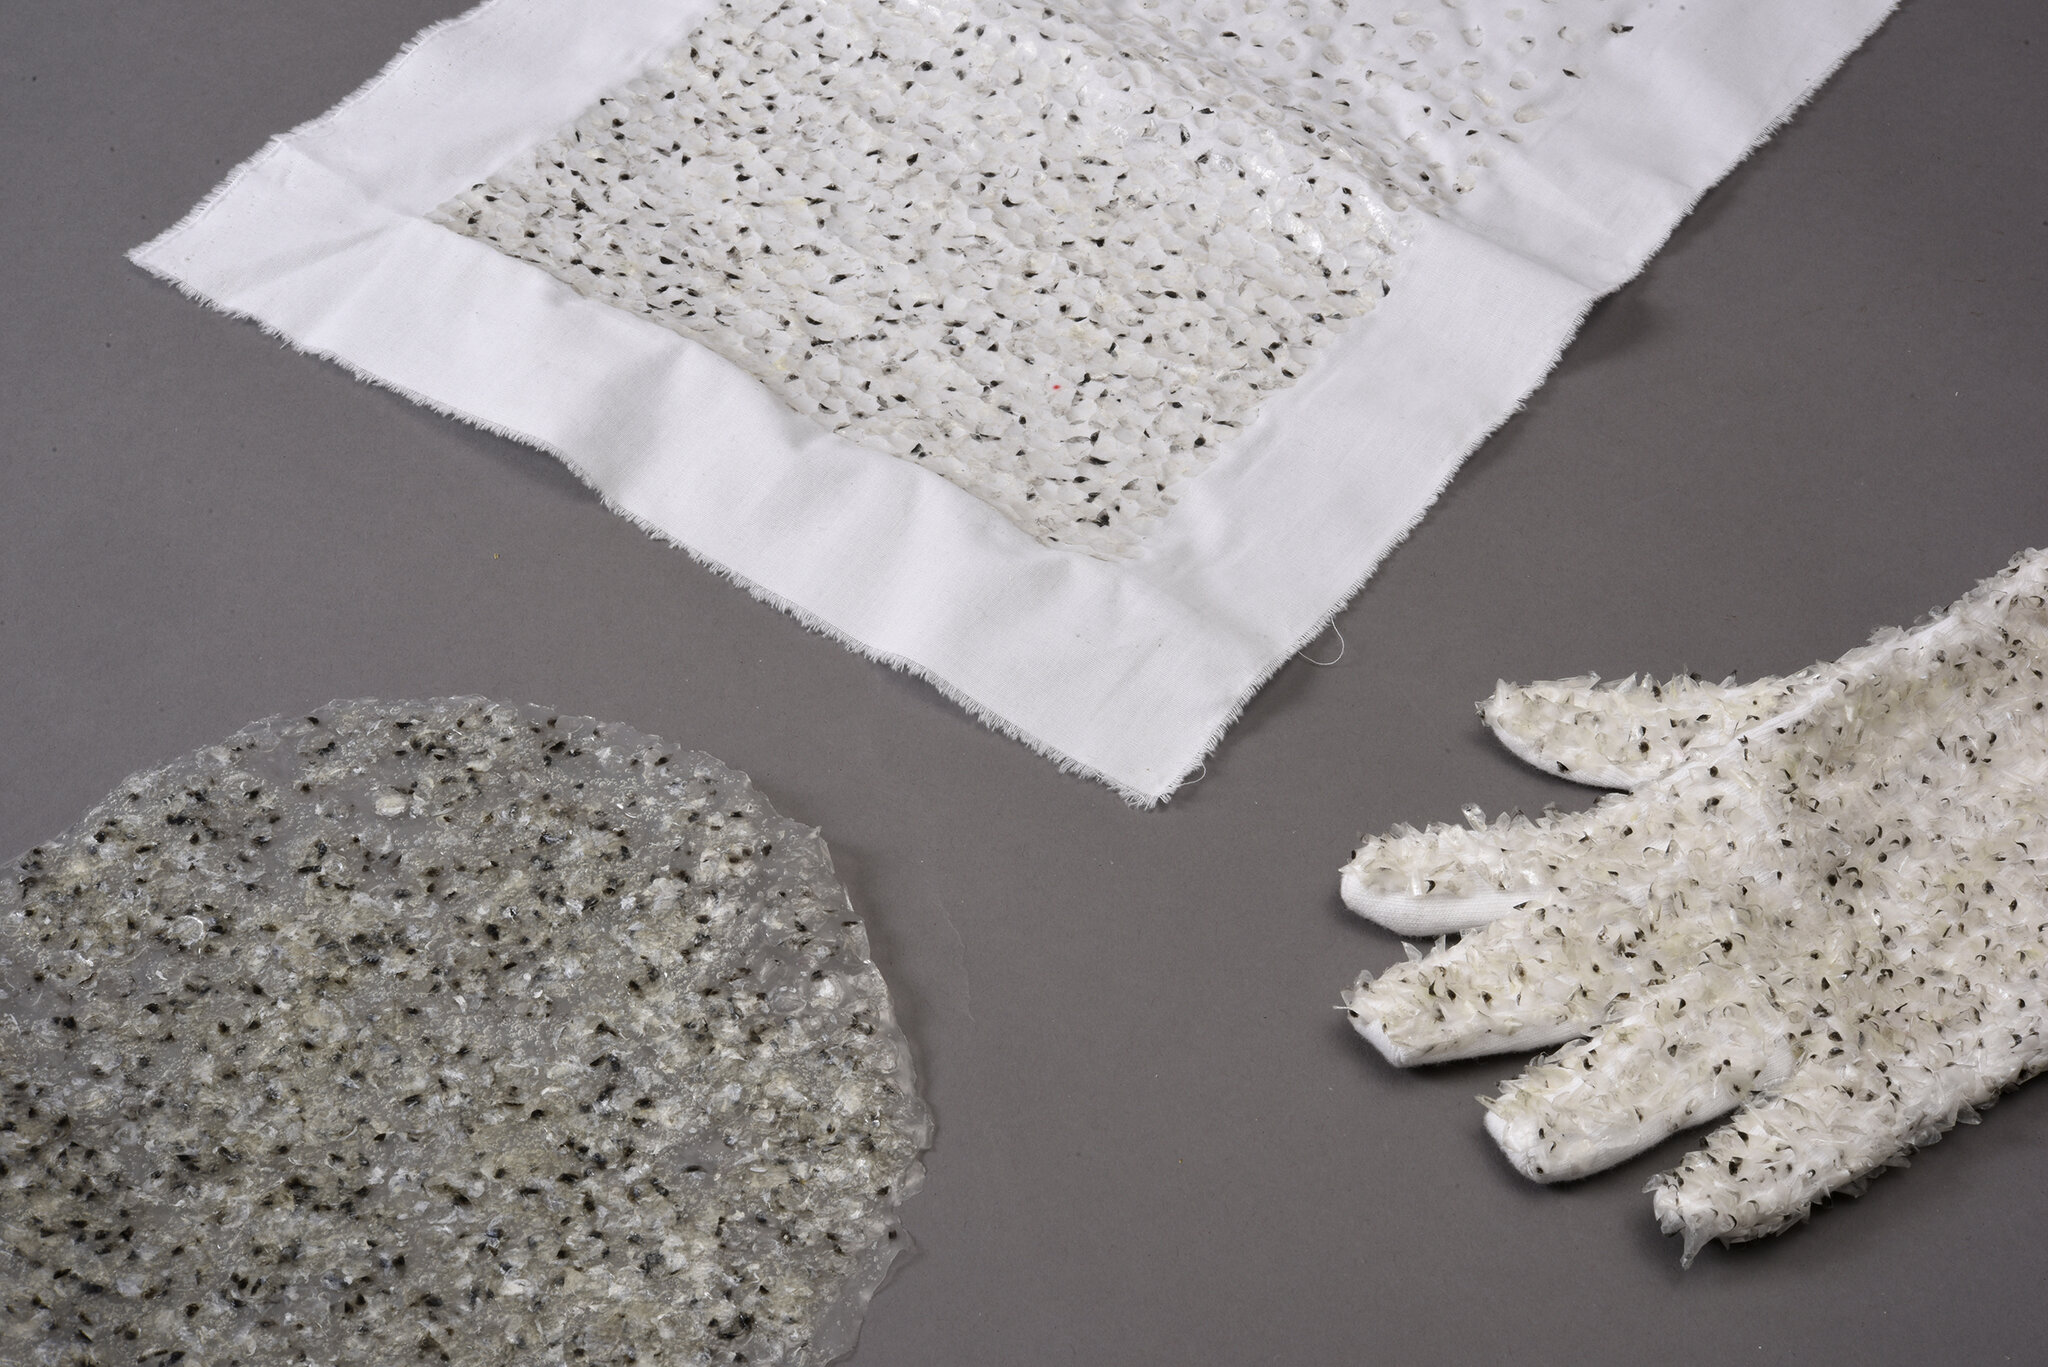 Die Fischschuppe – gestalterische Qualitäten in der textilen Fläche